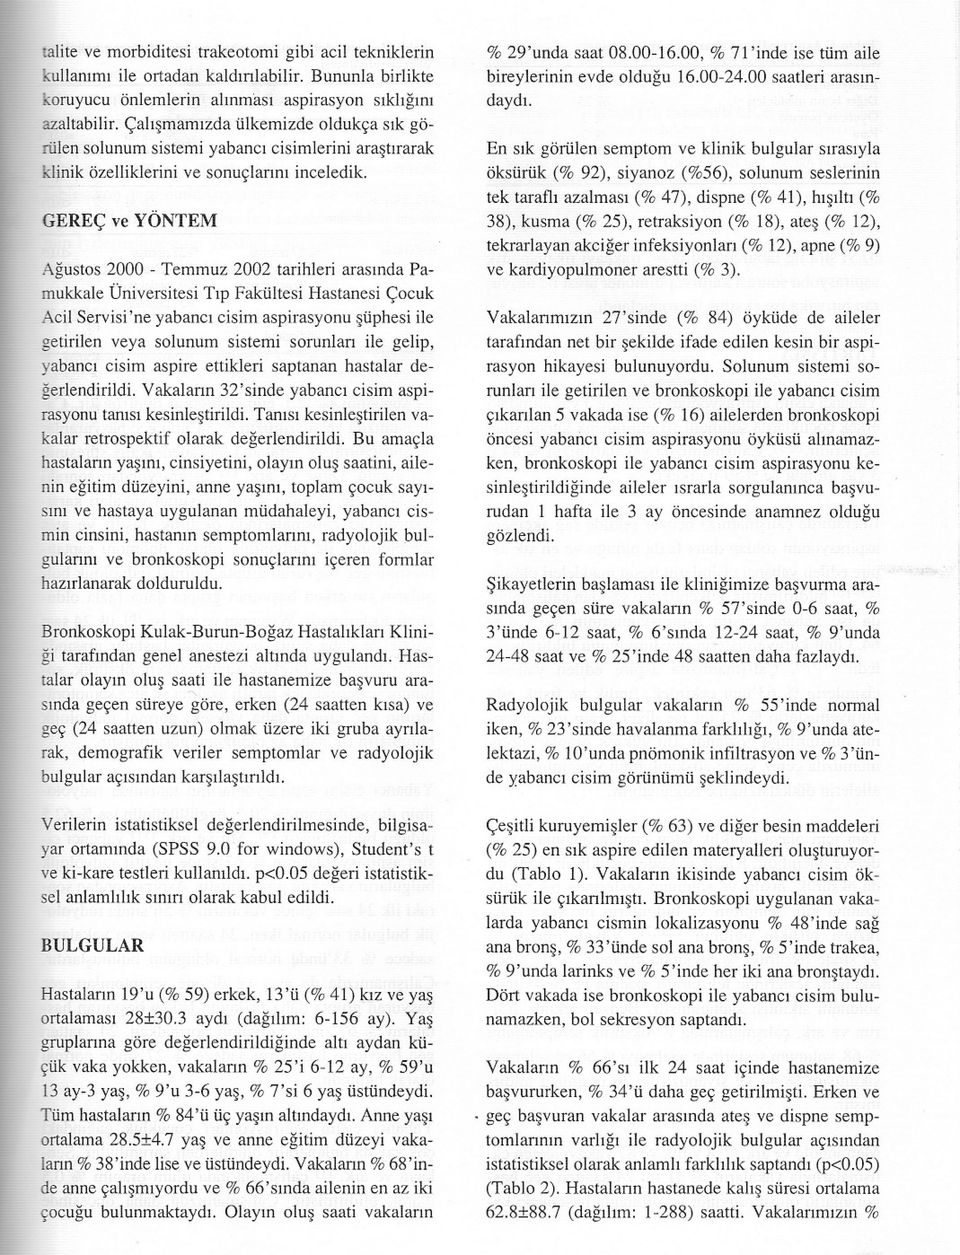 GEREÇ ve YÖNTEM Agustos 2000 - Temmuz 2002 tarihleri arasinda Pamukkale Üniversitesi Tip Fakültesi Hastanesi Çocuk Acil Servisi'ne yabanci cisim aspirasyonu süphesi ile getirilen veya solunum sistemi